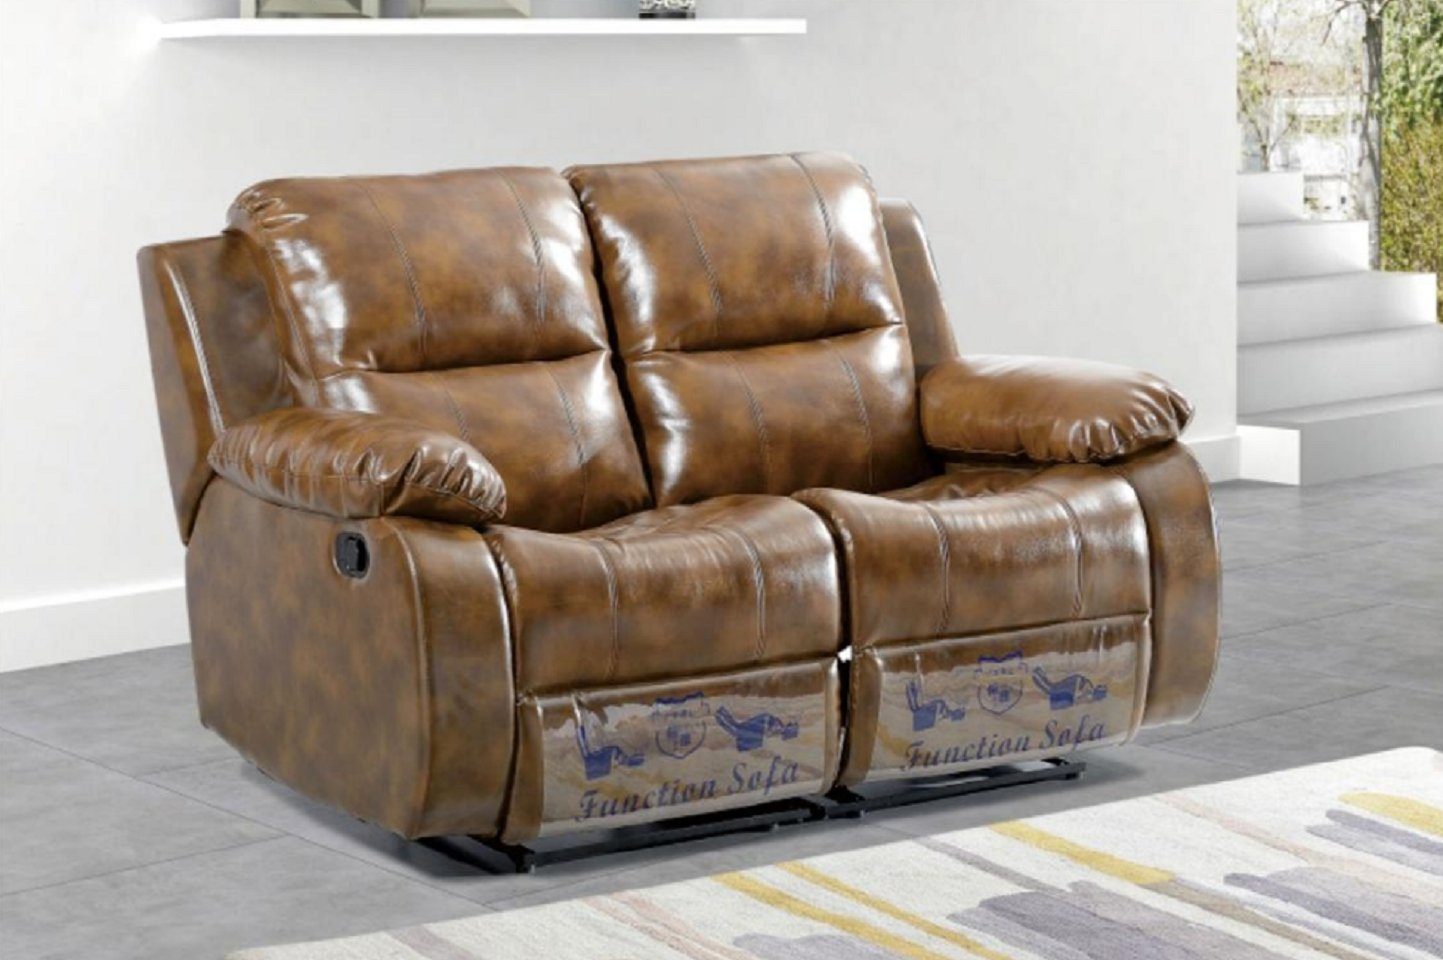 JVmoebel 2-Sitzer Braun Sofa 2 Sitzer Massagesessel Zweisitzer Relax Neu, 1 Teile, mit Relaxfunktion